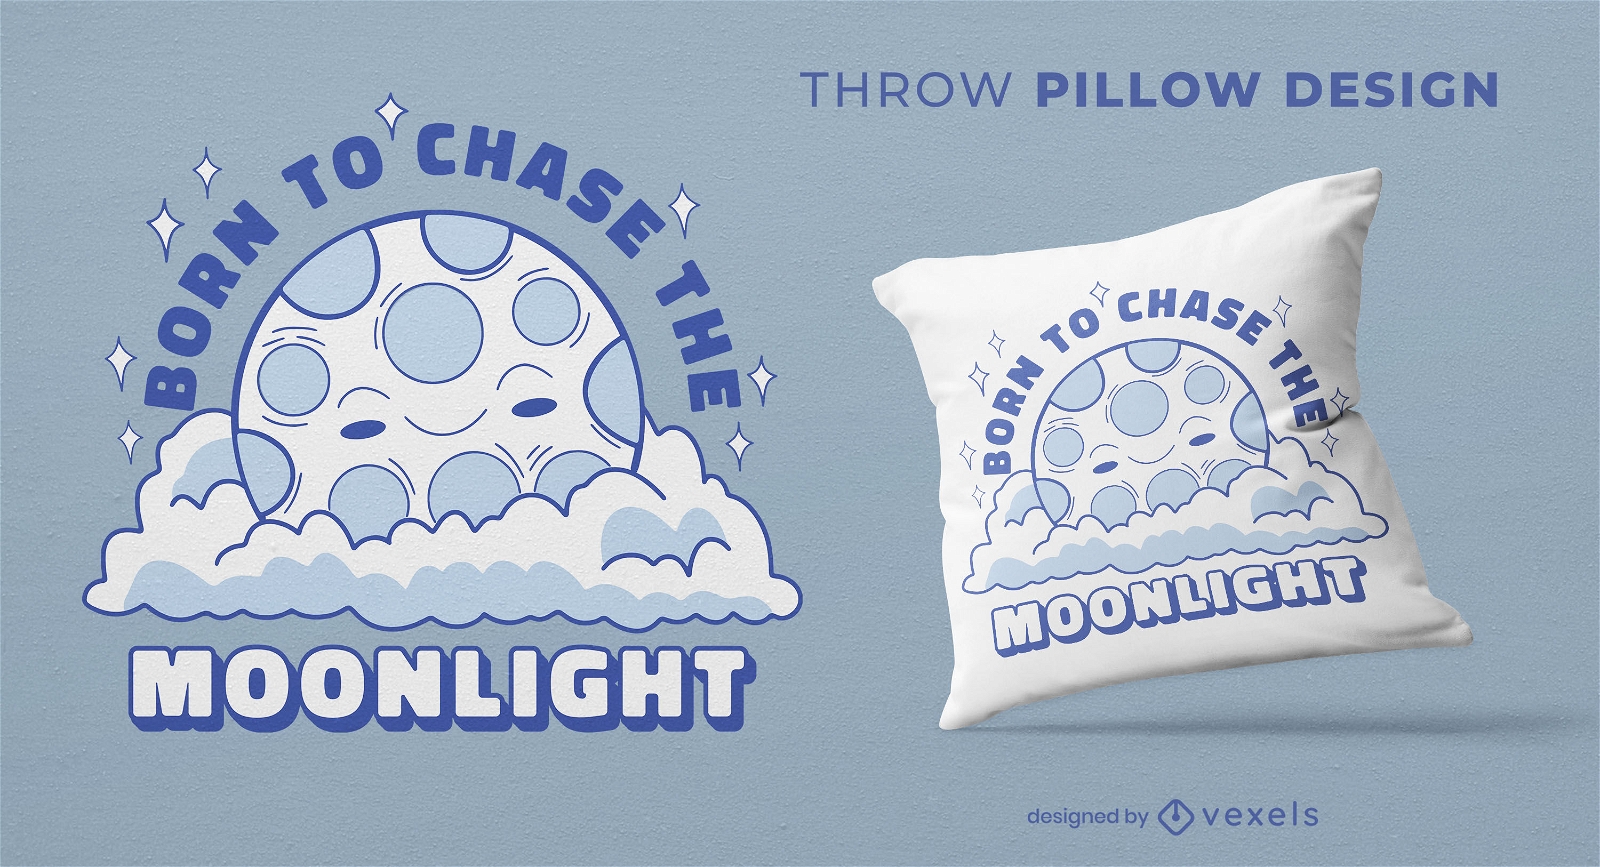 Moonlight throw pillow design